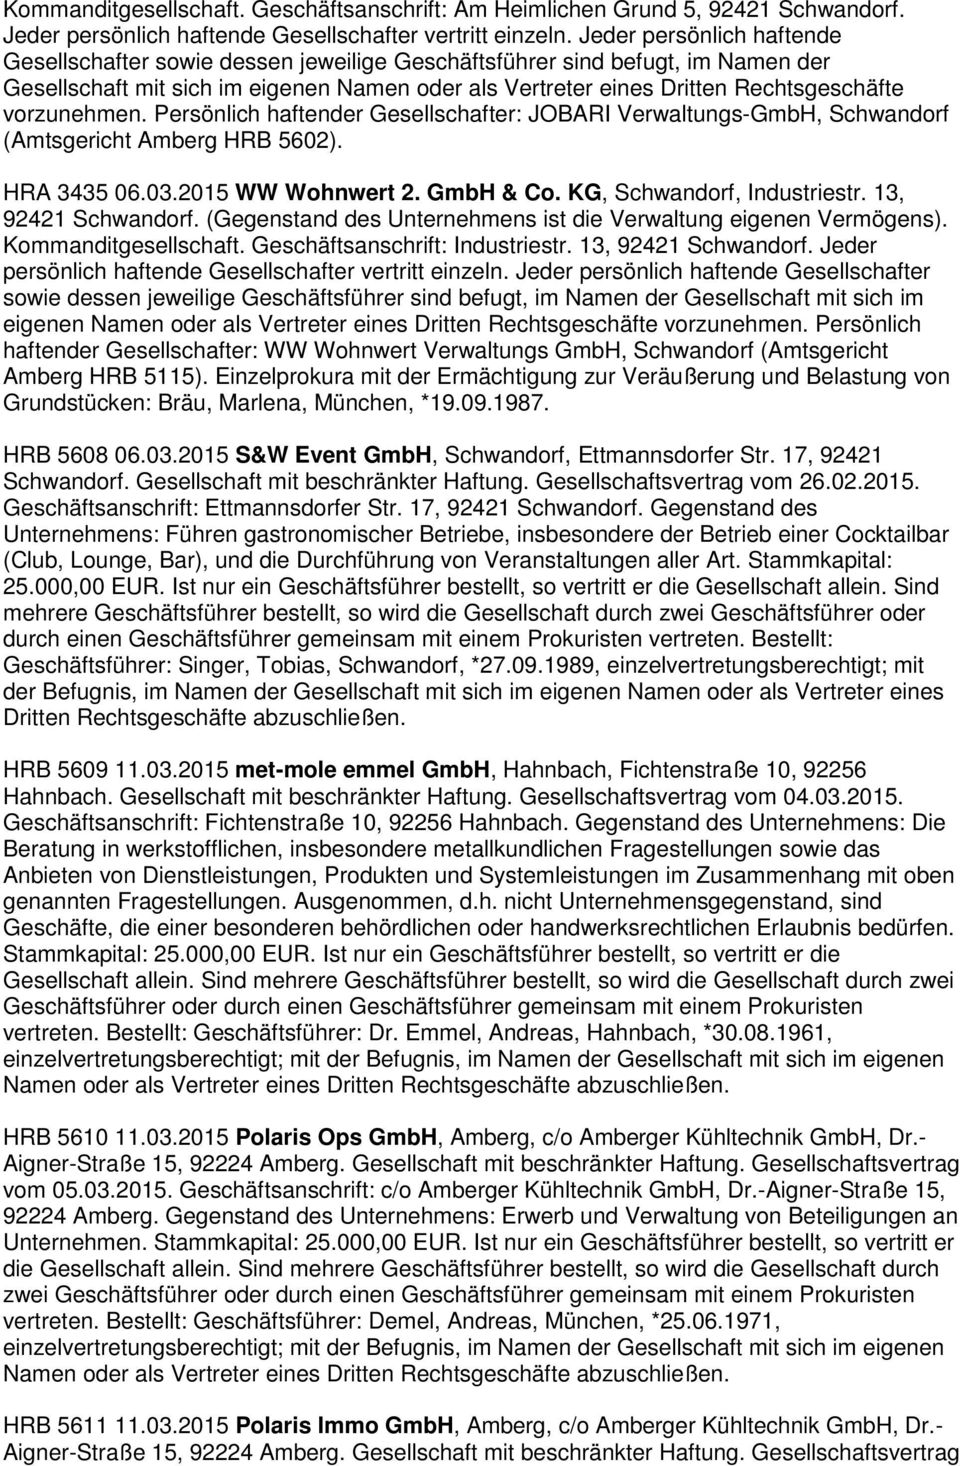 Persönlich haftender Gesellschafter: JOBARI Verwaltungs-GmbH, Schwandorf (Amtsgericht Amberg HRB 5602). HRA 3435 06.03.2015 WW Wohnwert 2. GmbH & Co. KG, Schwandorf, Industriestr.